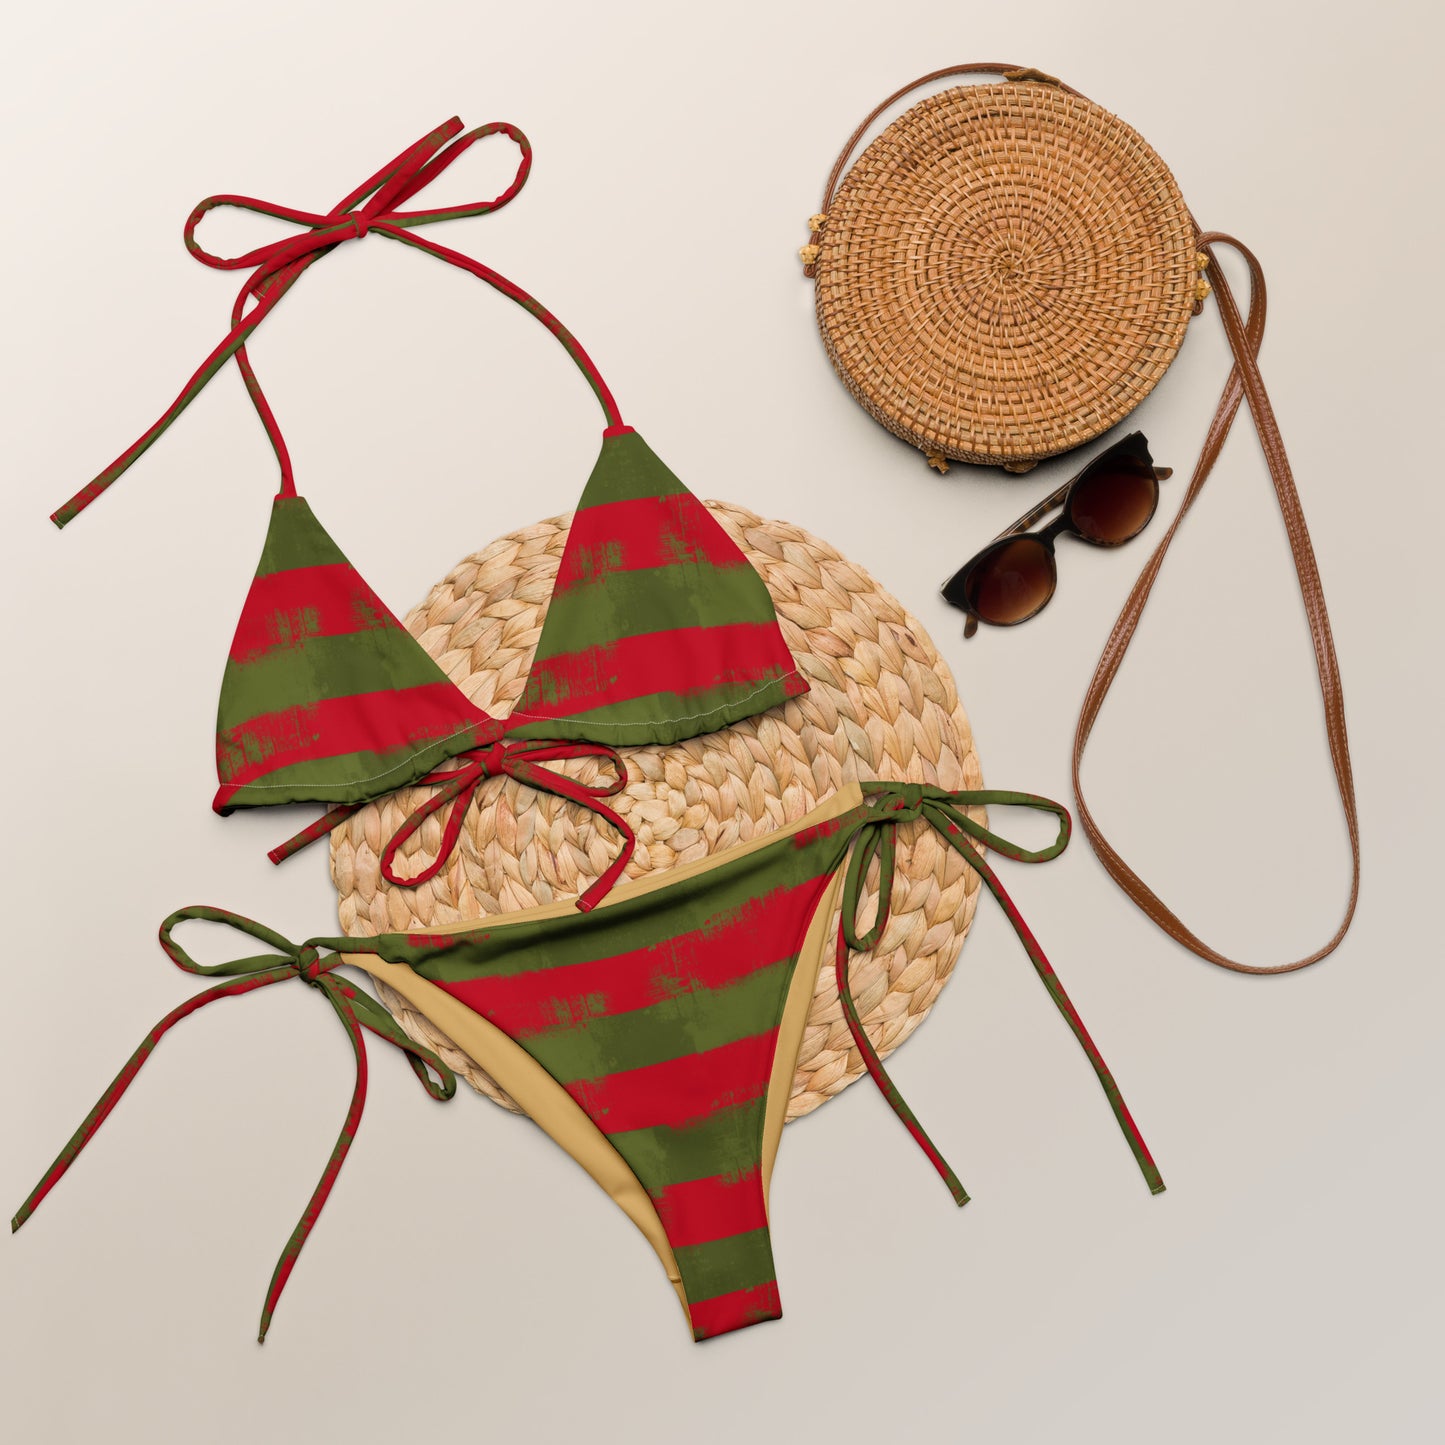 Freddy Krueger Inspired string bikini